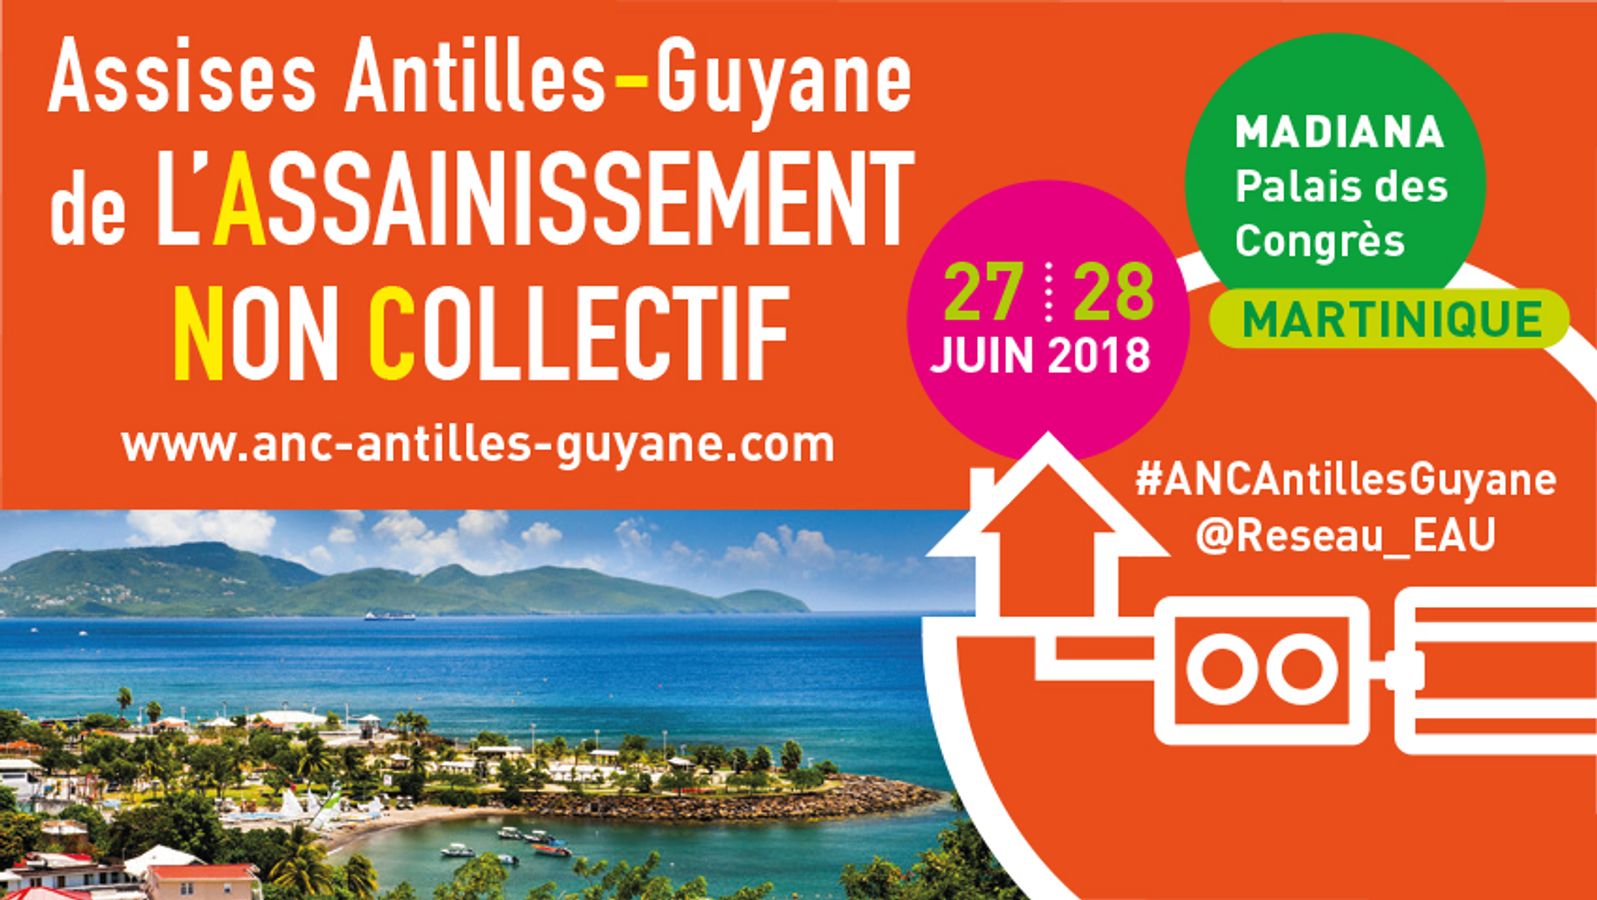 Assises Antilles Guyane de l'ANC - Supports de présentation Jour 1